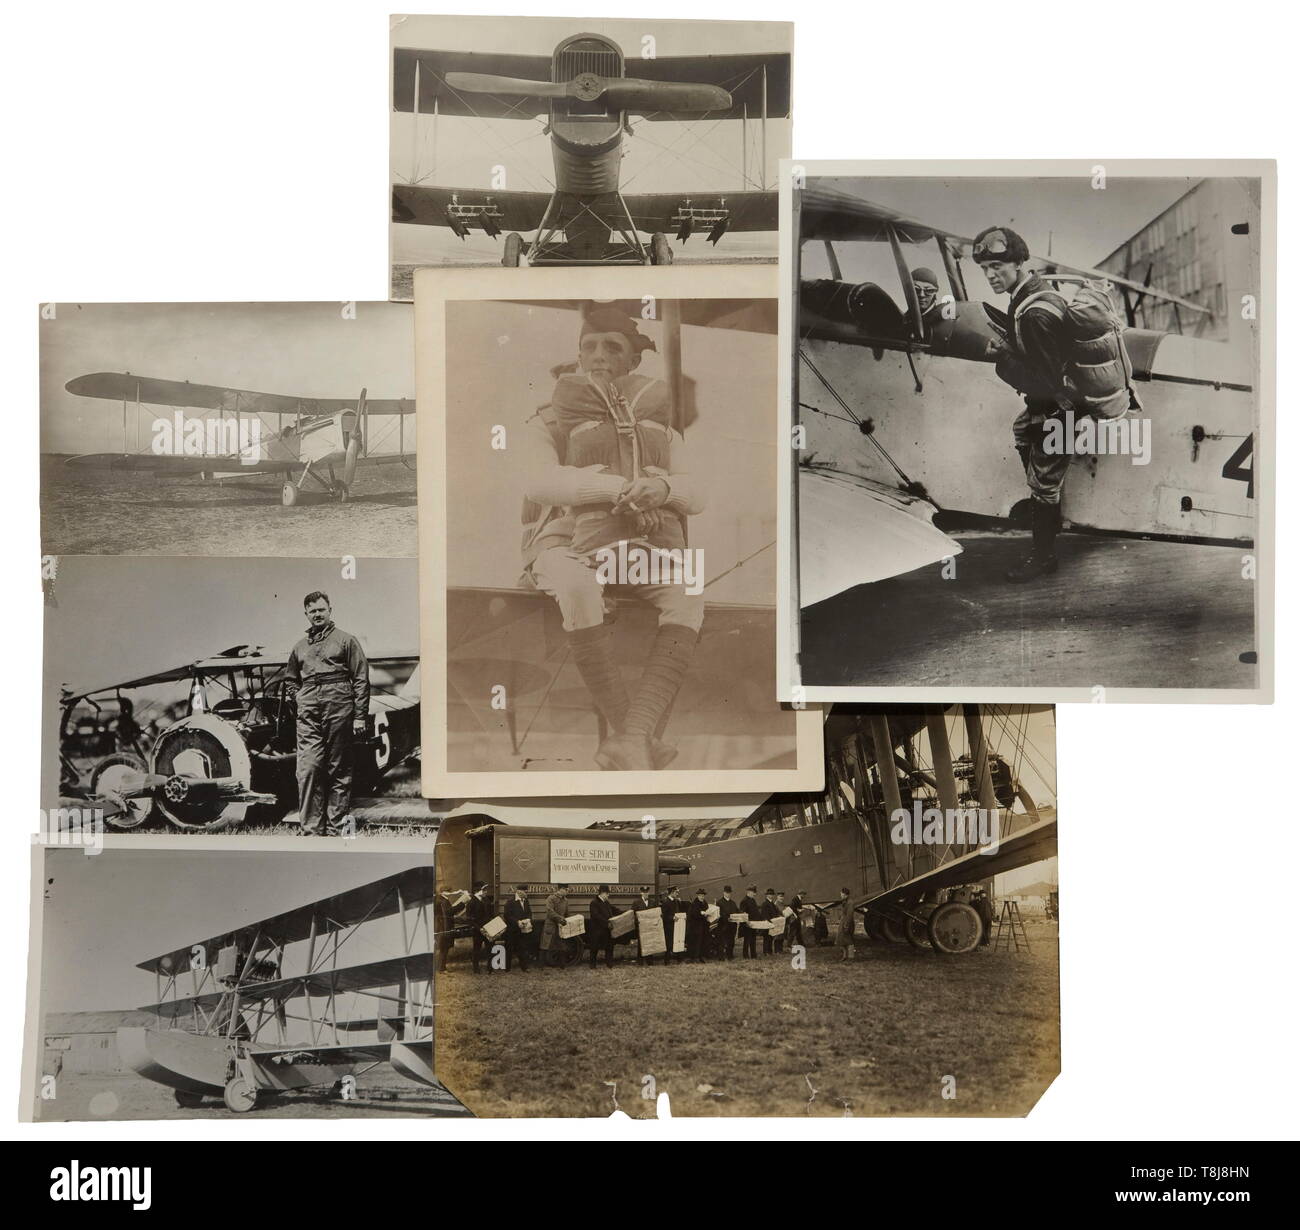 La finca fotográfico del legendario aviador americano George C. Pomeroy durante 30 predominantemente fotos de gran tamaño (13 x 18 cm) del aviador americano observó. Las imágenes muestran los biplanos y monoplanes con buenos detalles técnicos, parcialmente subtituladas en la espalda. Con Inglés triangle calculadora y unas cuantas postales. Interesante finca de un piloto estadounidense que fue entrenado por el famoso pioneros Wilbur y Orville Wright. G.C. Pomeroy ha registrado más de 28.000 horas de vuelo en estos días y ambas guerras mundiales. histórico, históricos, de tropa, soldados, fuerzas armadas, militares, militaria, sólo Editorial-Use Foto de stock